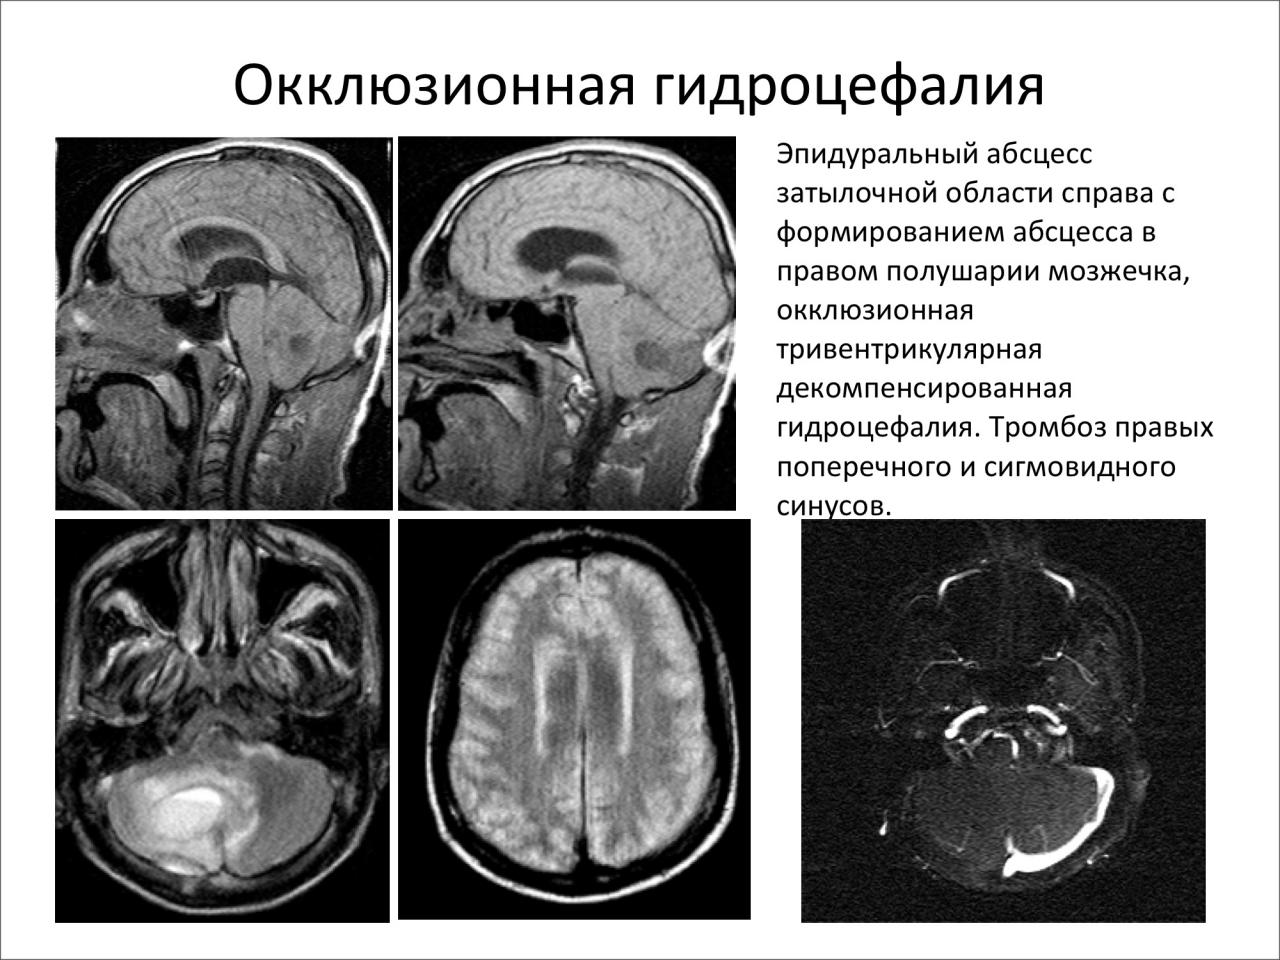 Гидроцефалия головного мозга симптомы лечение